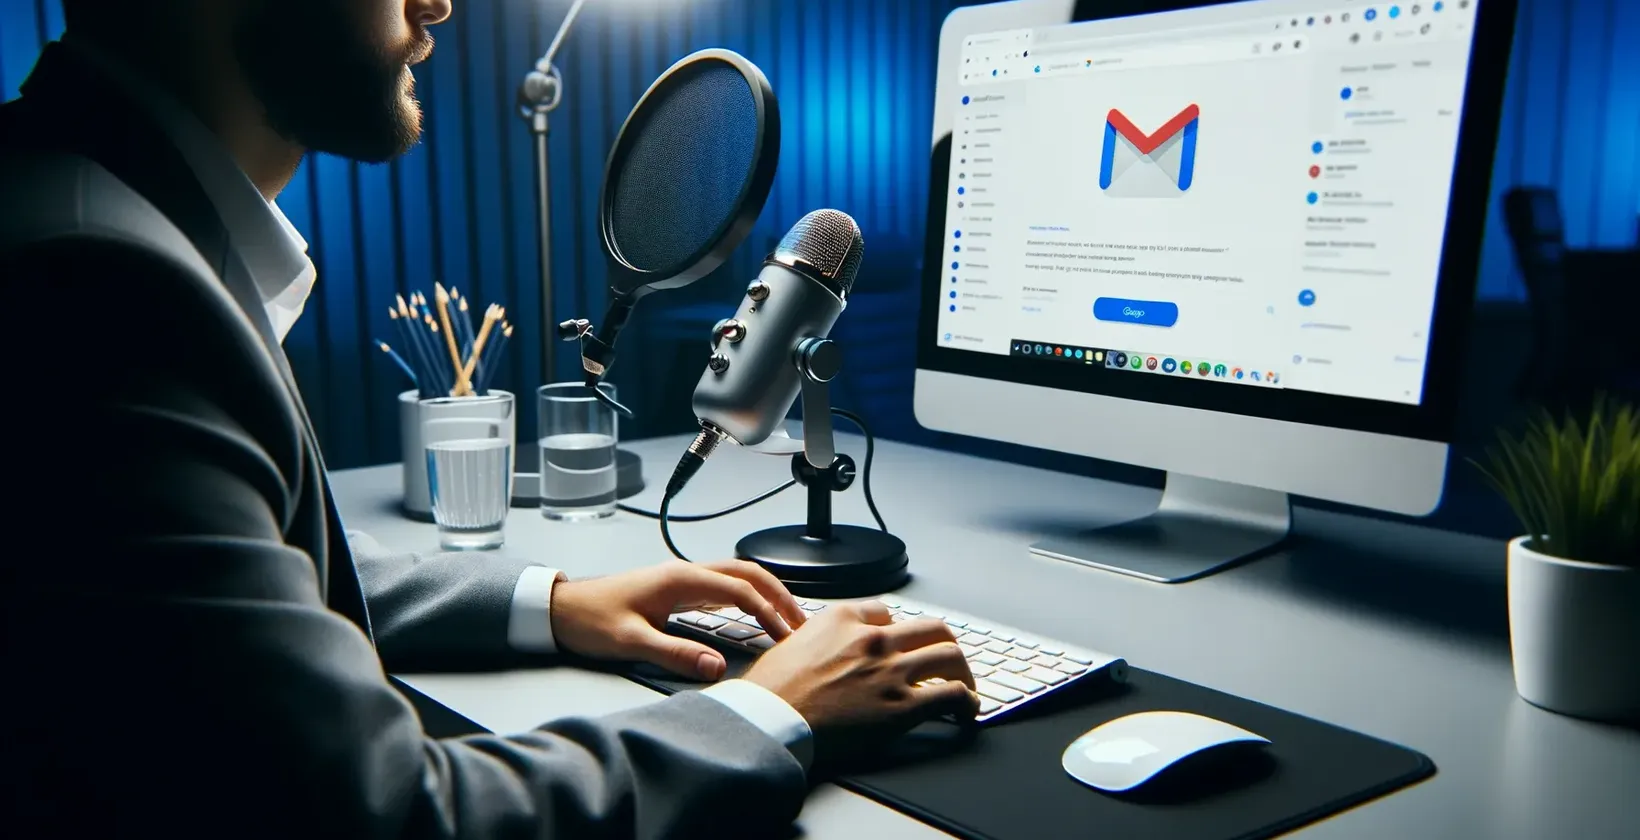 Има човек пред компјутерски микрофон, кој се подготвува да диктира меил со Gmail отворен на екранот.